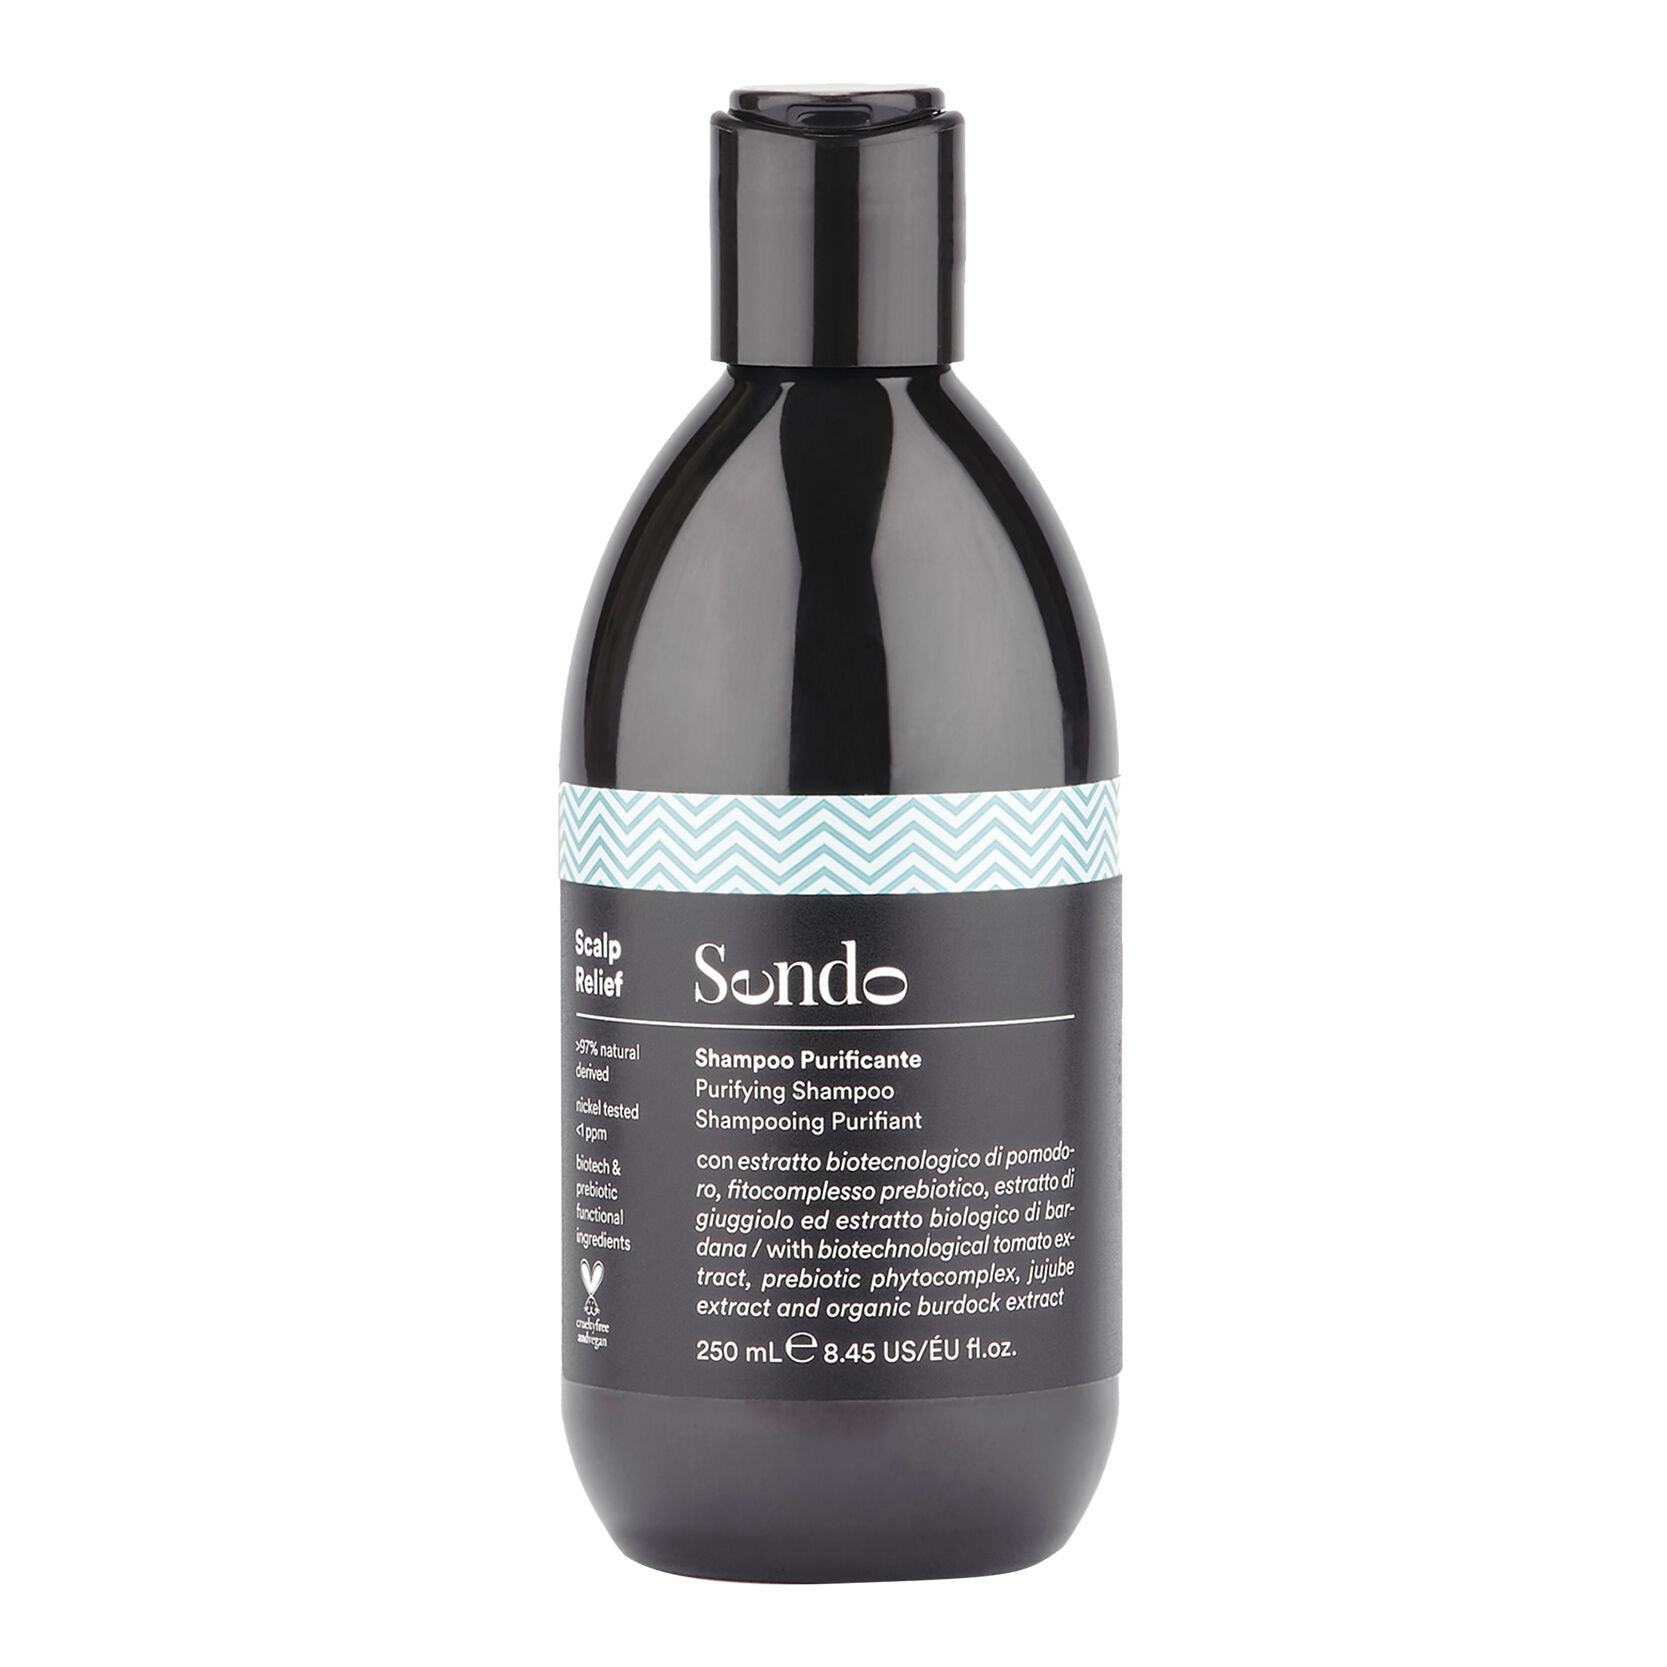 Очищающий шампунь для волос против перхоти Sendo Scalp Relief, 250 мл